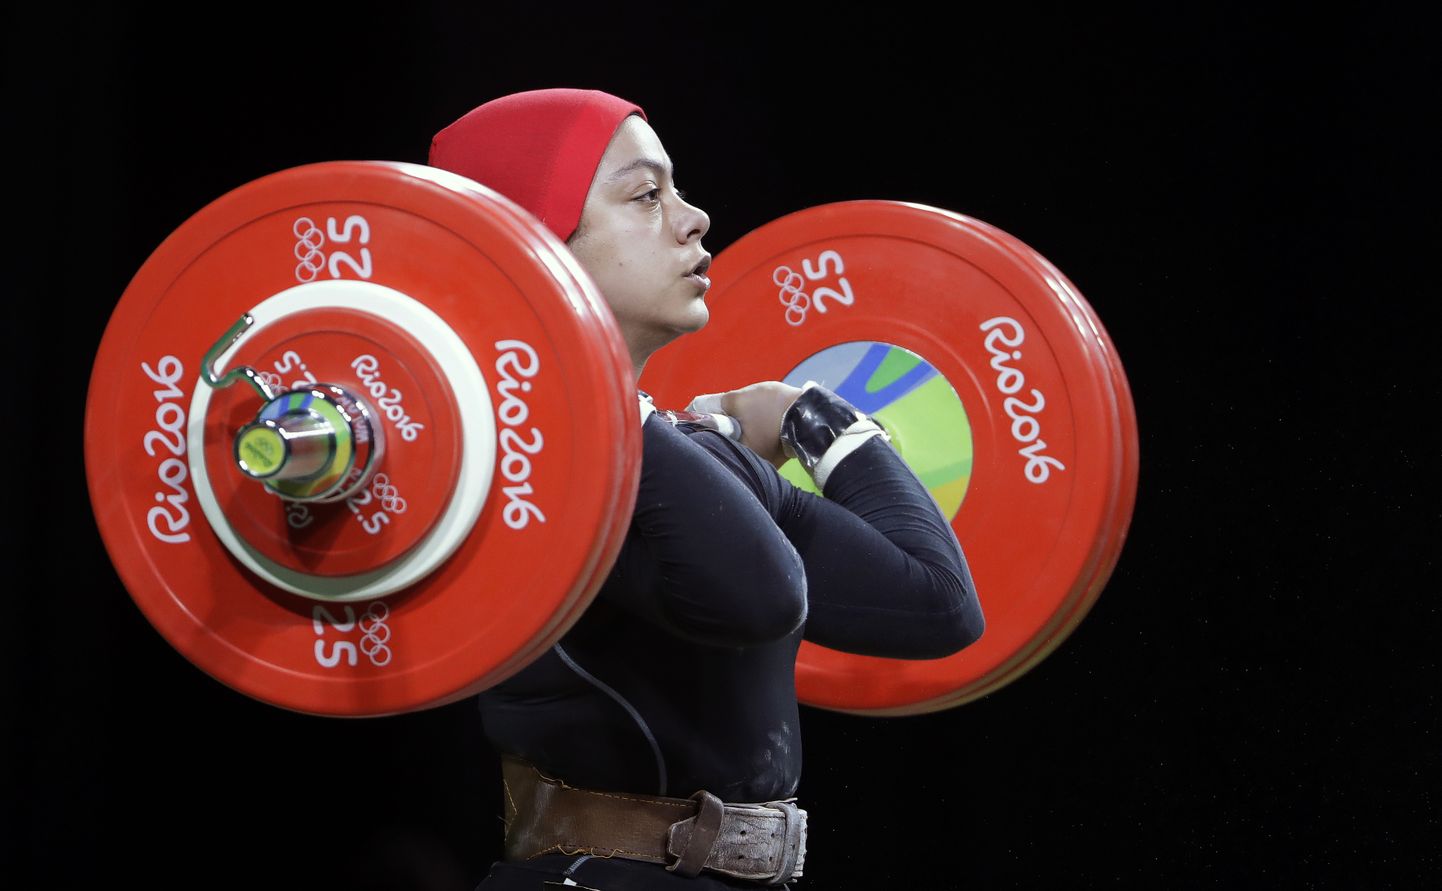 Egiptlanna Sara Ahmed võitis 2016. aastal Rio mängudel kehakaalus kuni 69 kg pronksmedali.